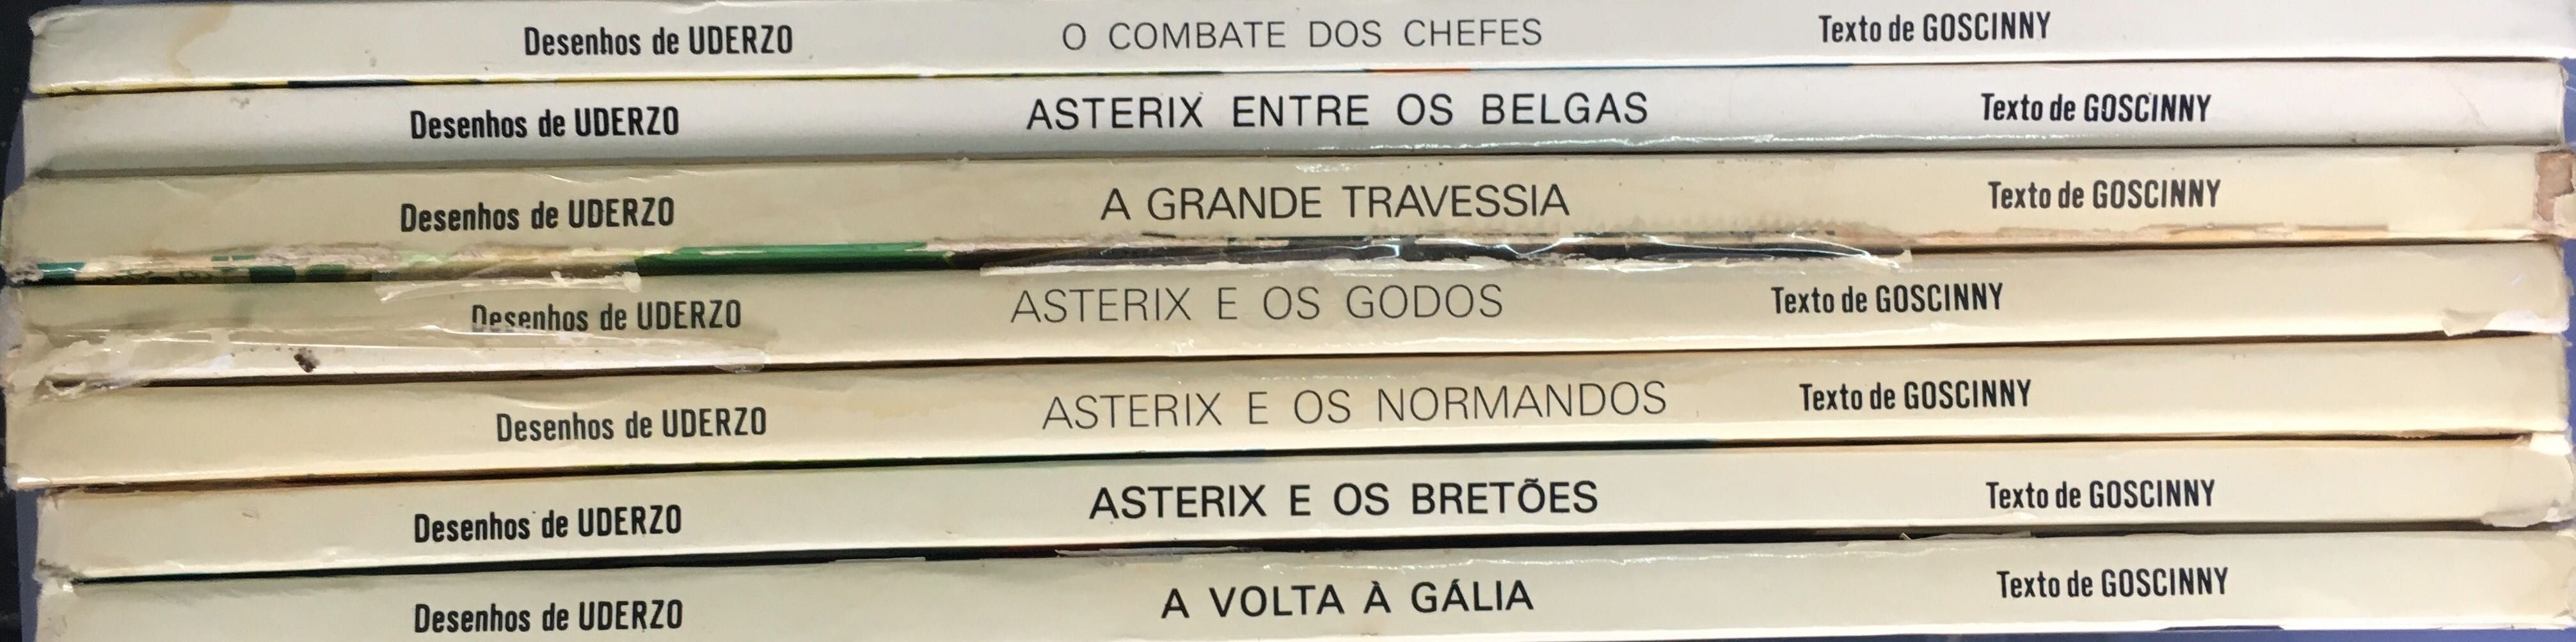 Colecção Livros Asterix